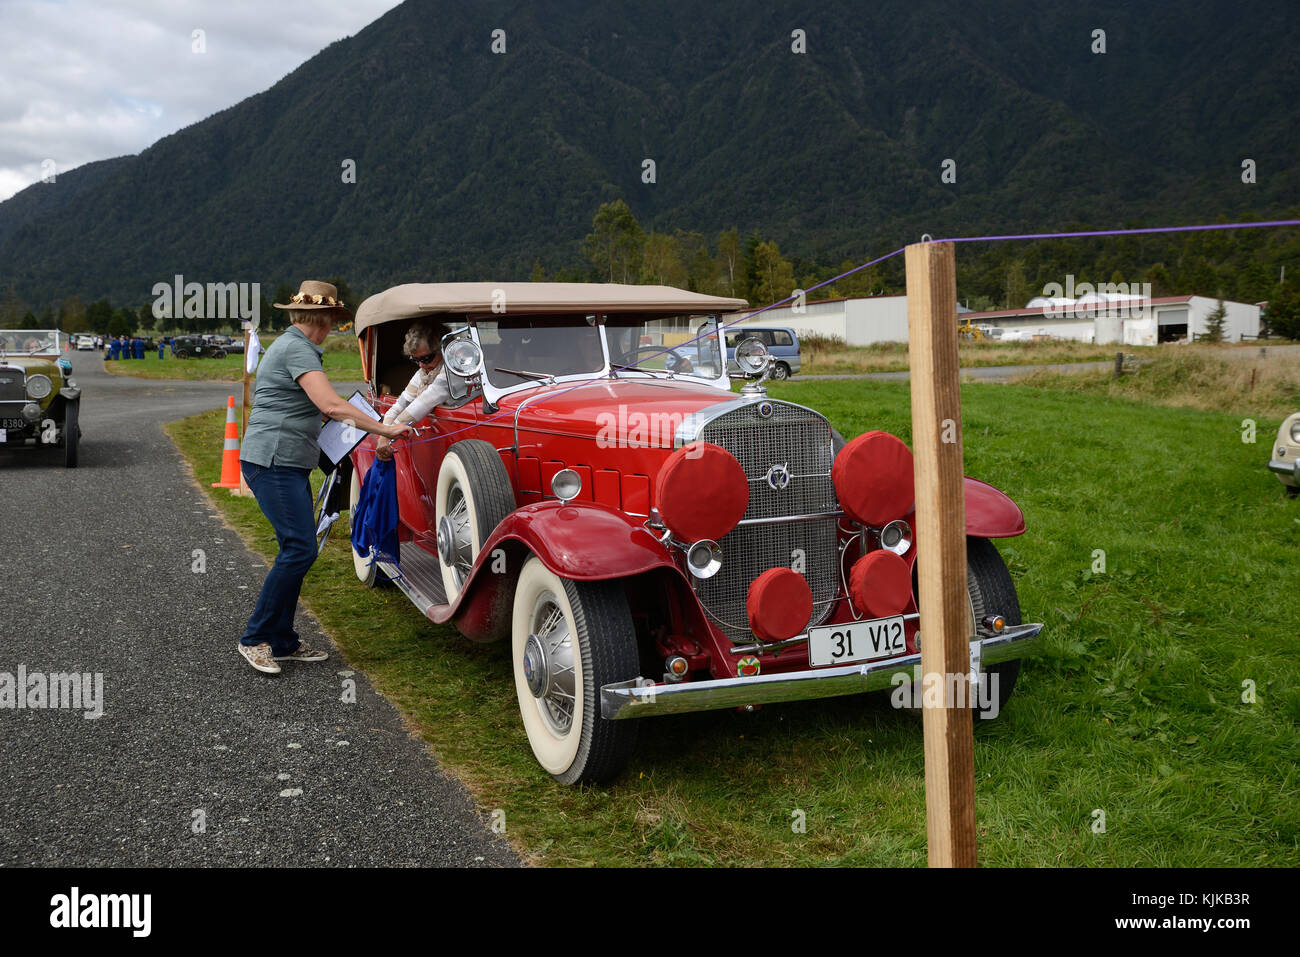 HAUPIRI, Nouvelle-Zélande, le 18 mars 2017 : les candidats dans un rallye de voitures anciennes traîner dans un temps de lavage de la concurrence. Le véhicule est une Cadillac V12 1931. Banque D'Images